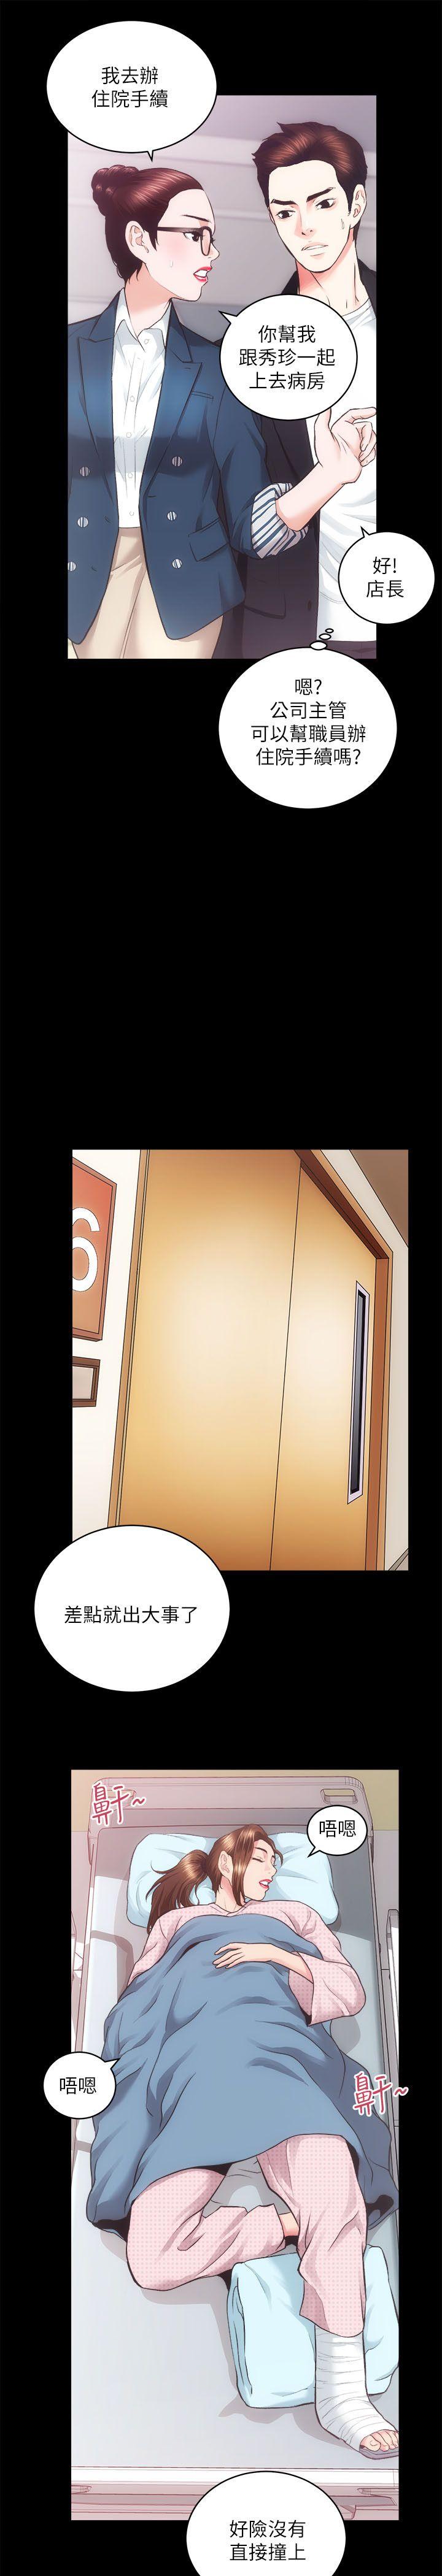 《性溢房屋》漫画 第18话 - 医院厕所